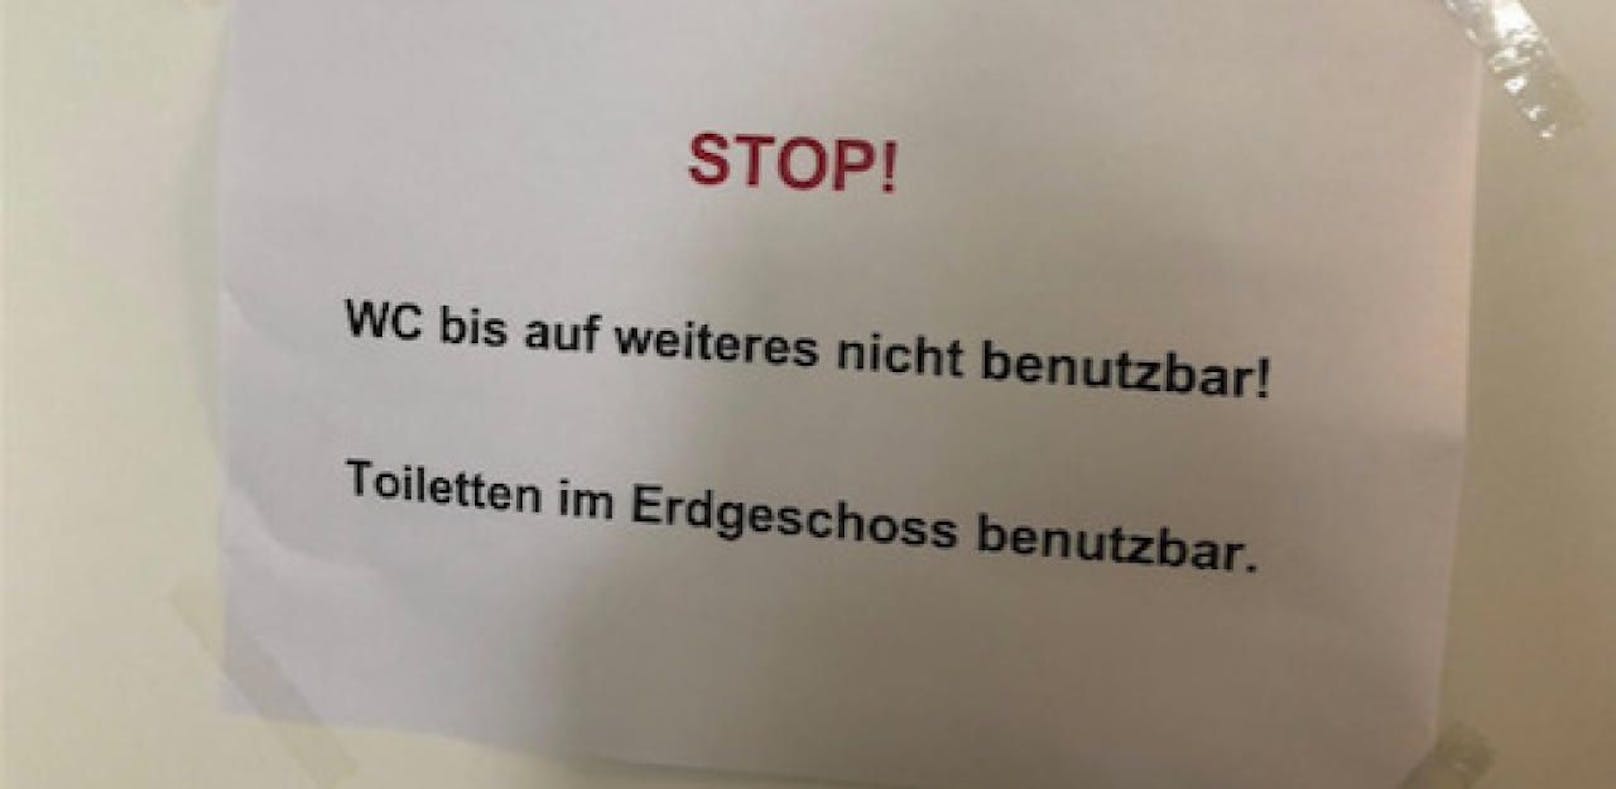 Toiletten in Wiener Schule wegen Kälte "zugefroren"